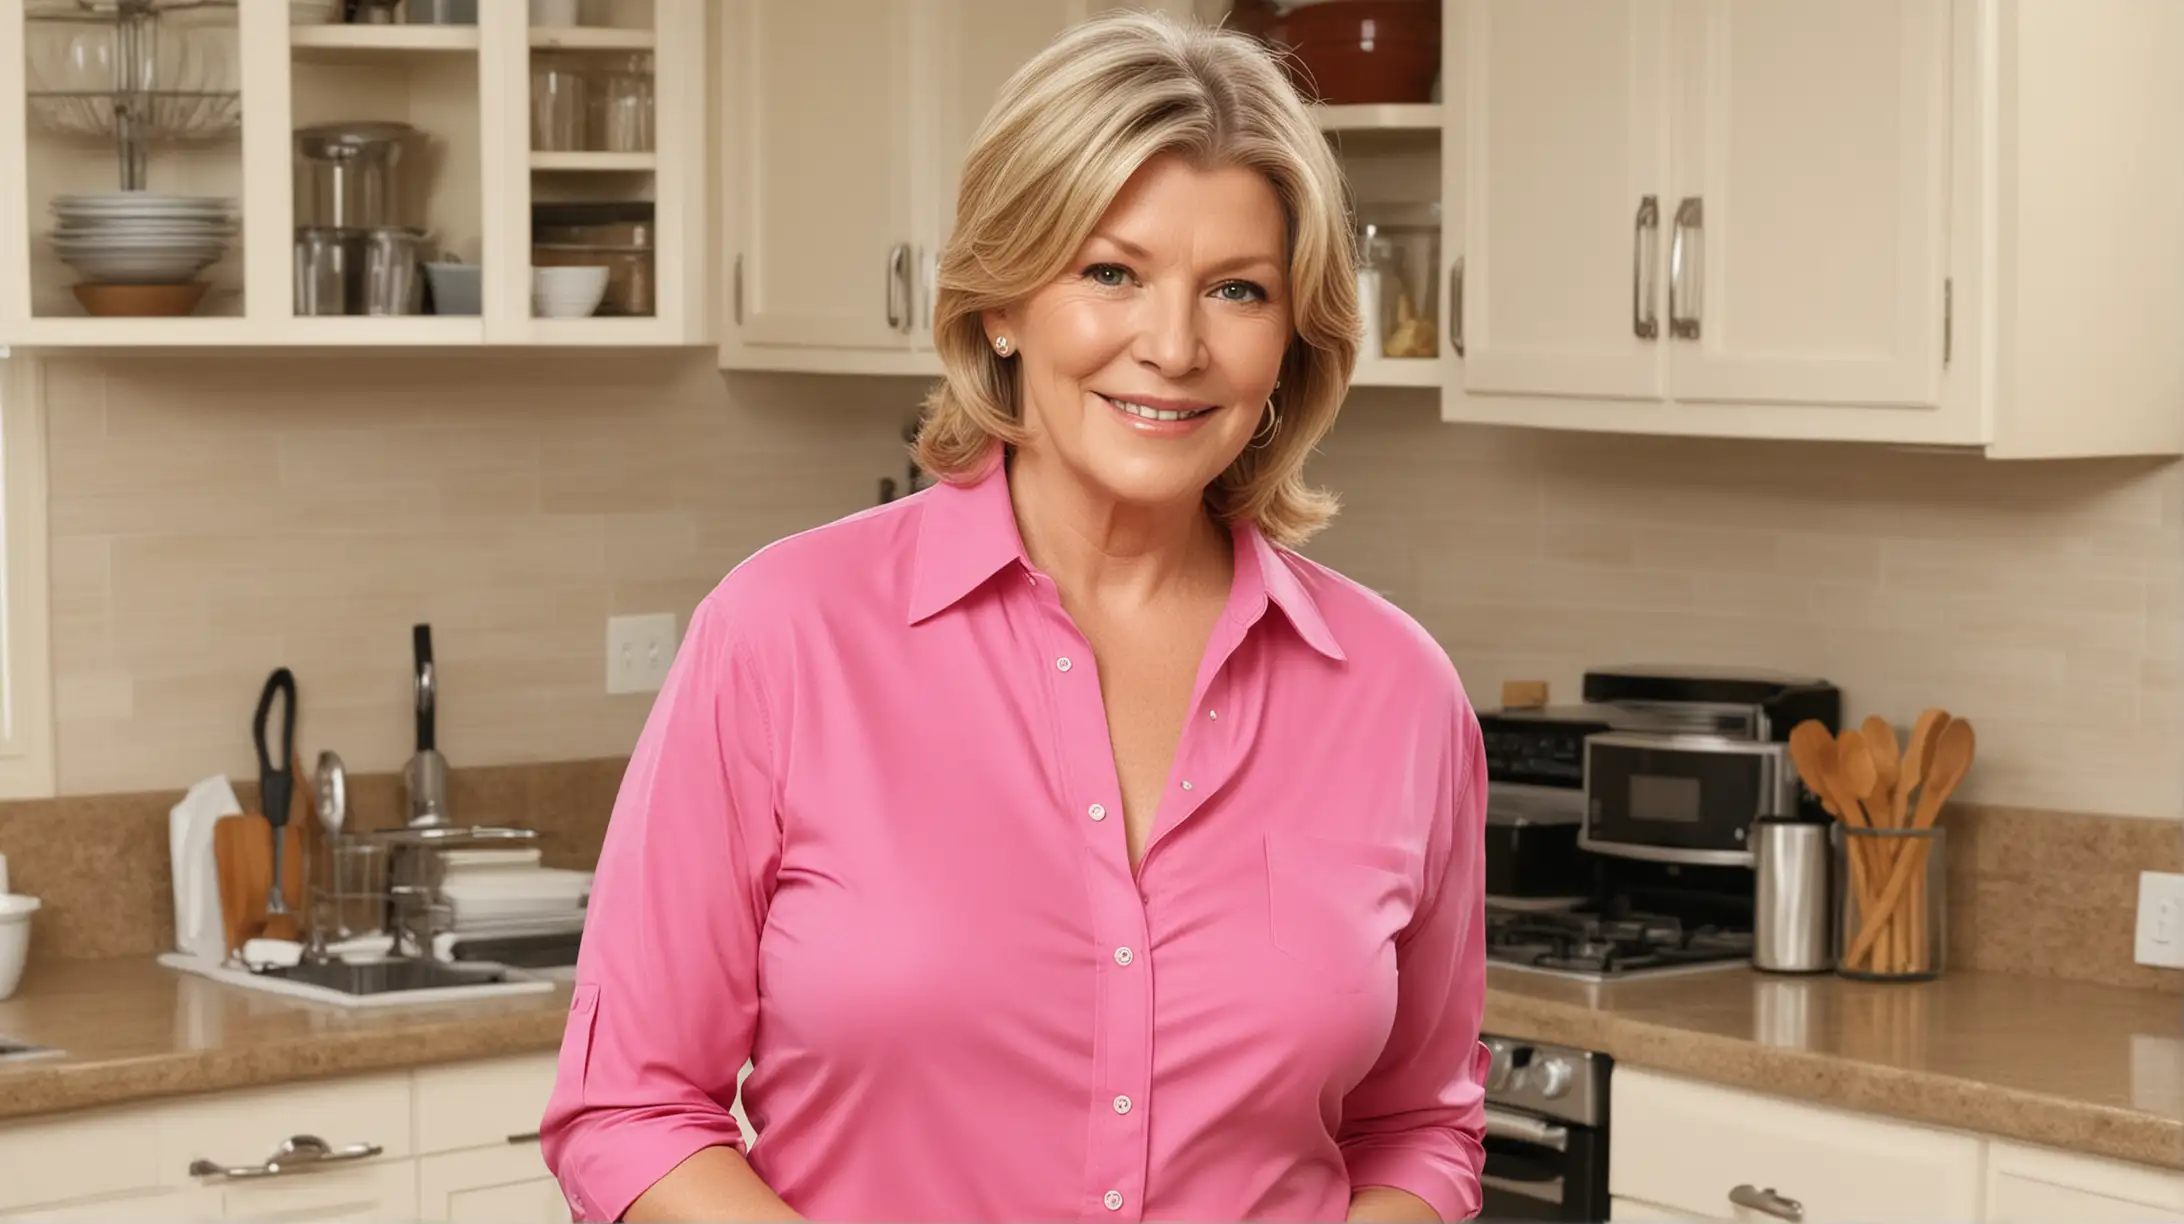 Kitchen Goddess Martha Stewart Doppelgnger in Hot Pink